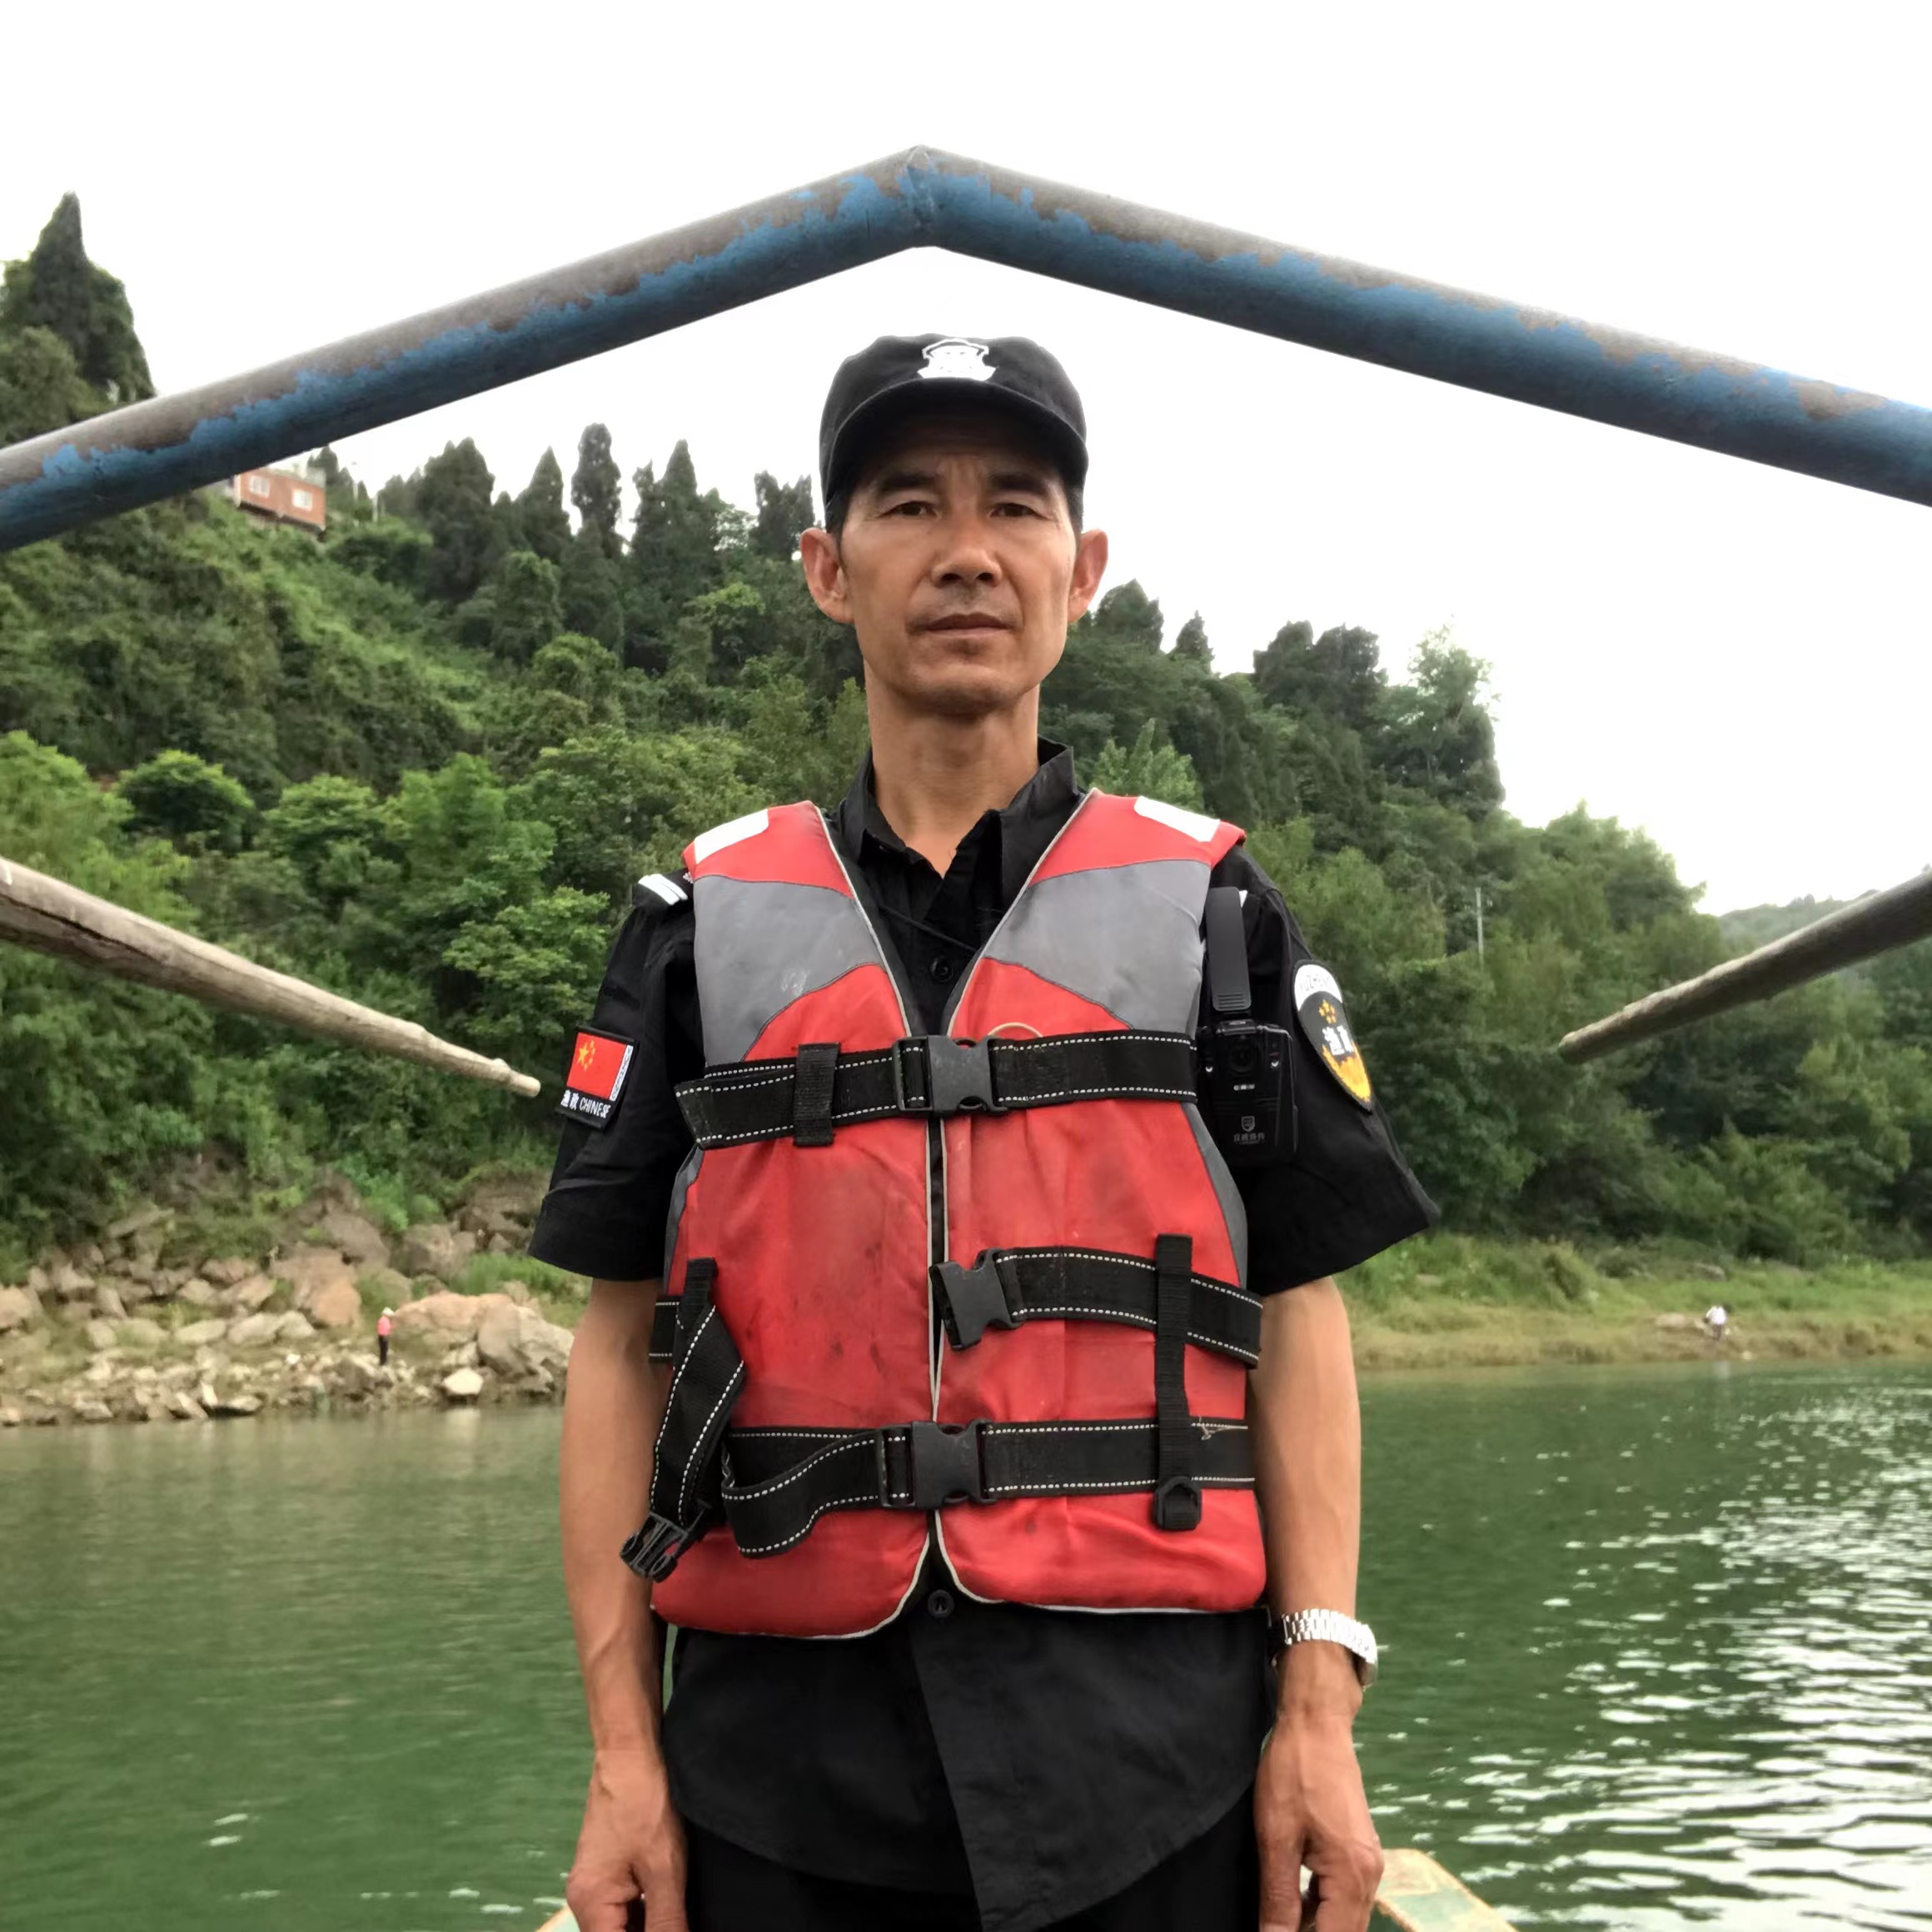 Liu Chenglin patrols the Yichang section of the Yangtze River in May 2019. Photo: Courtesy of Liu